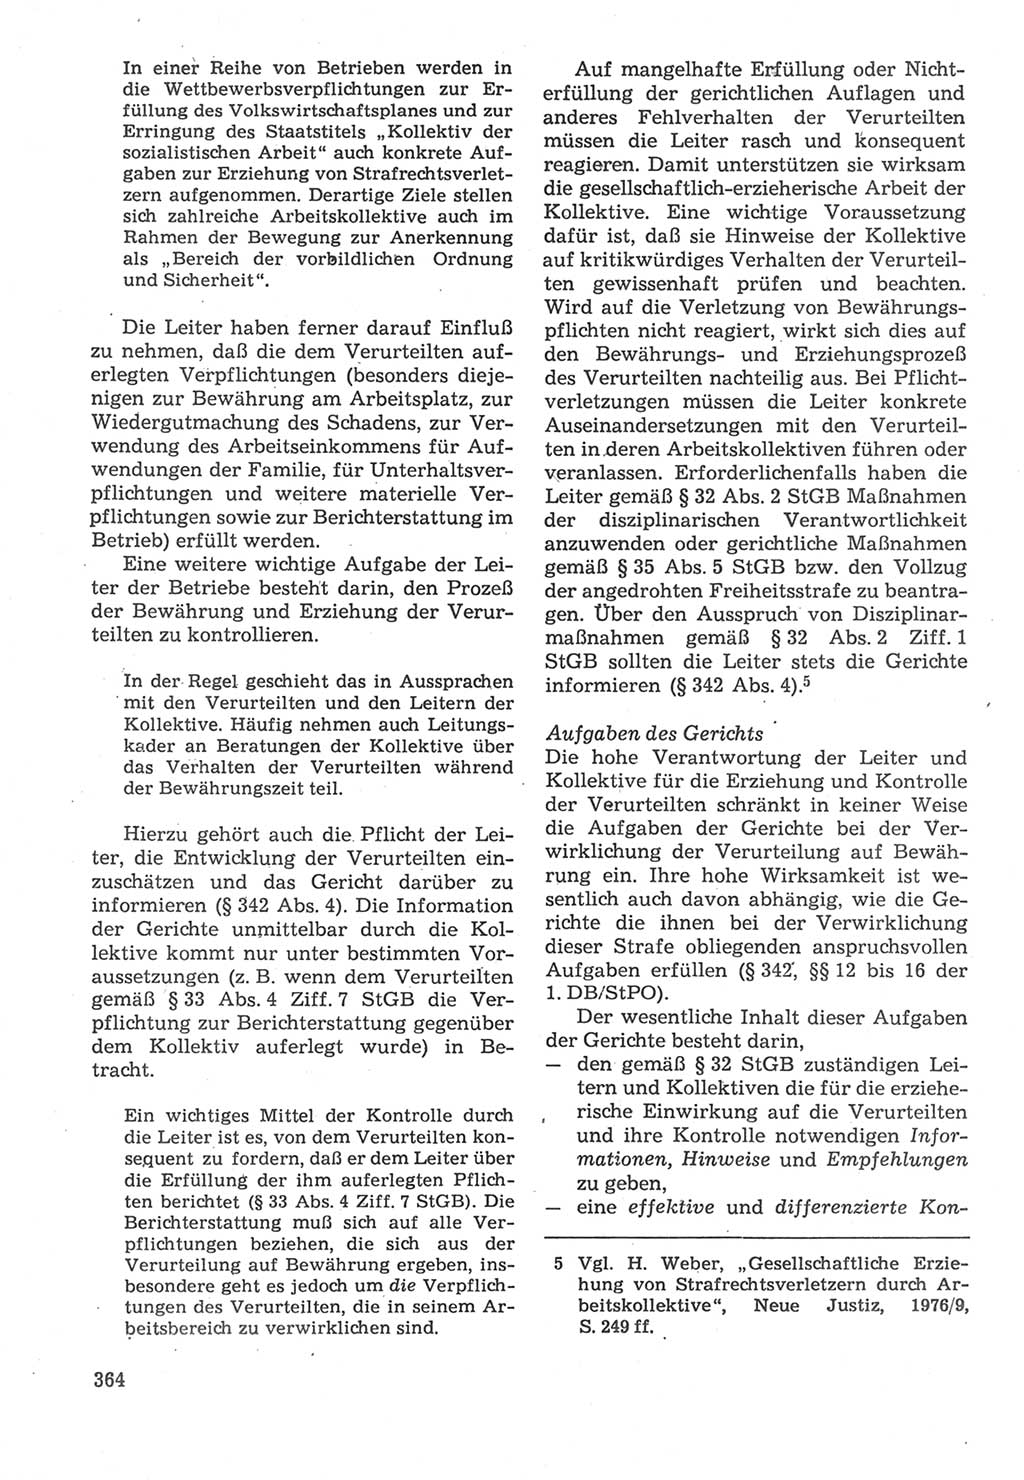 Strafverfahrensrecht [Deutsche Demokratische Republik (DDR)], Lehrbuch 1987, Seite 364 (Strafverf.-R. DDR Lb. 1987, S. 364)